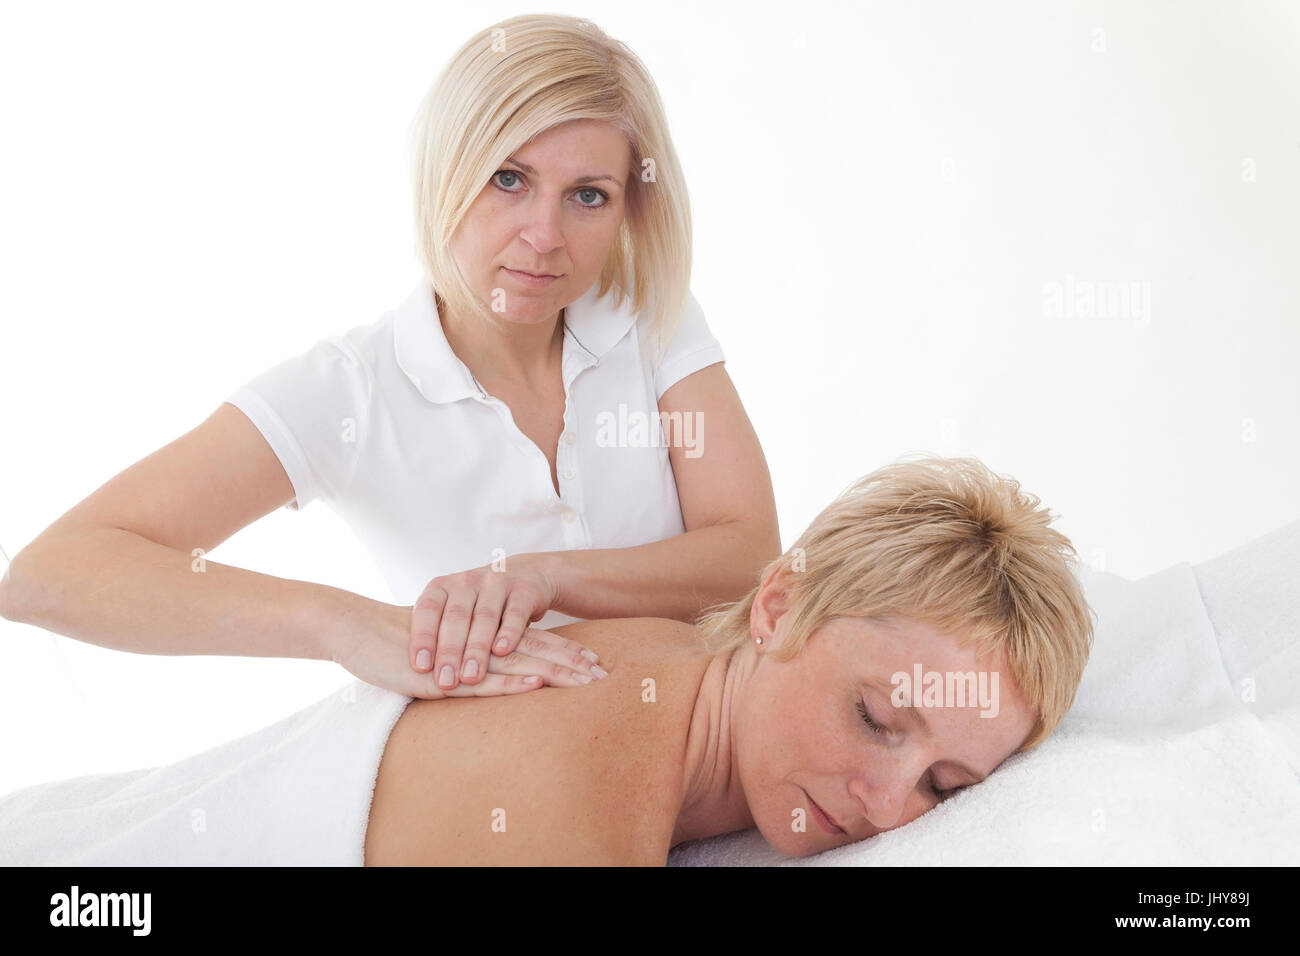 Woman receives a back massage - Woman receives a bake massage, Frau erhält eine Rückenmassage - Woman receives a back massage Stock Photo